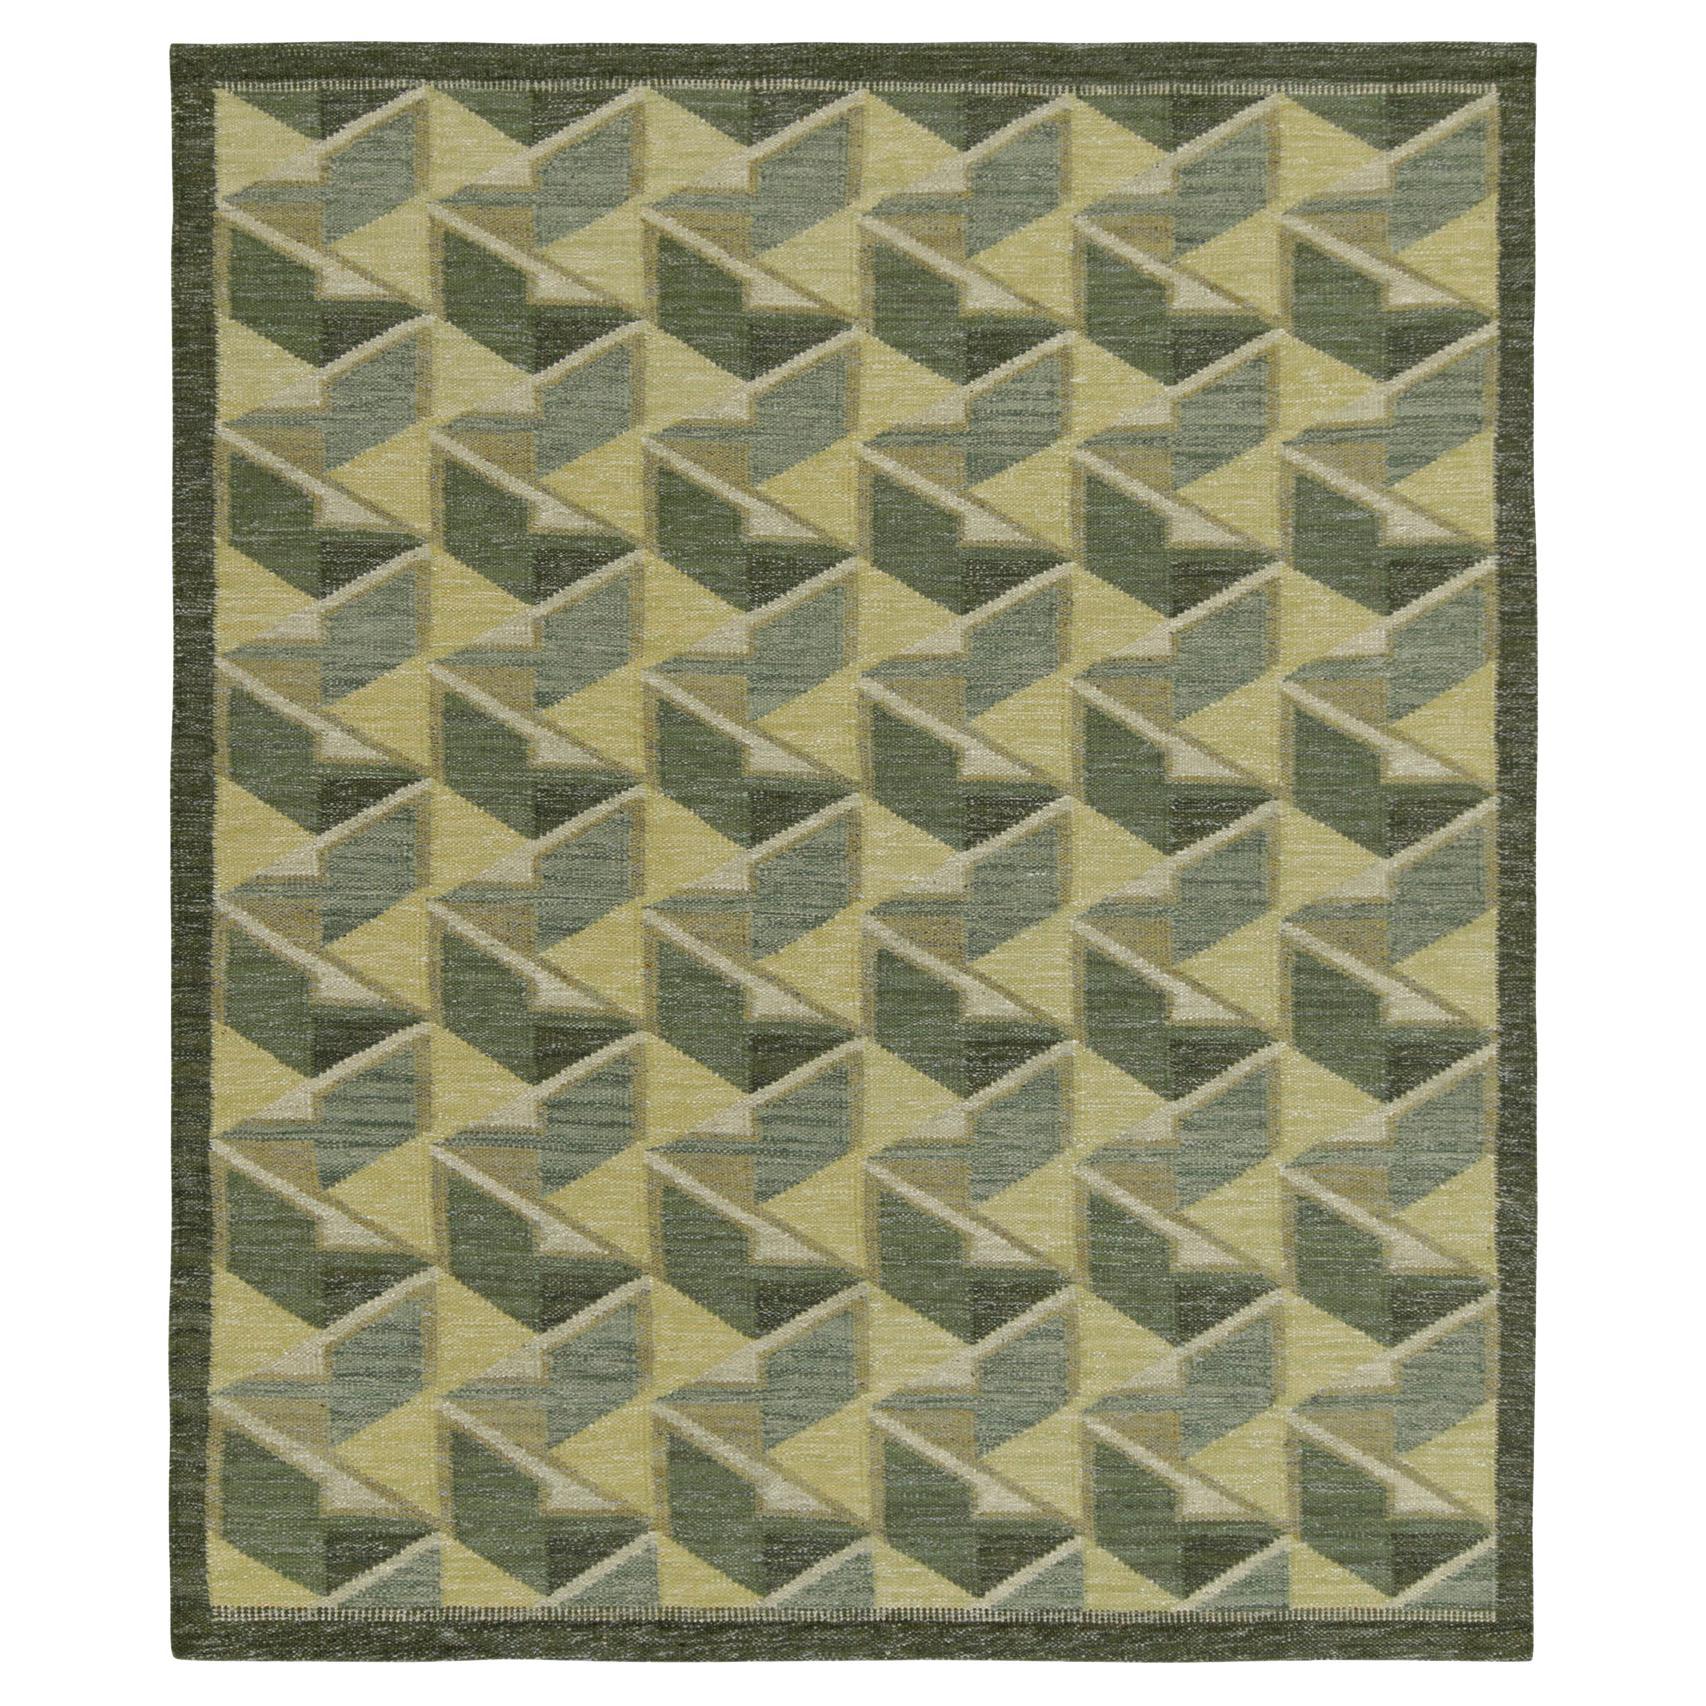 Teppich & Kelim-Teppich im skandinavischen Stil in Grün & Grau mit geometrischem Muster